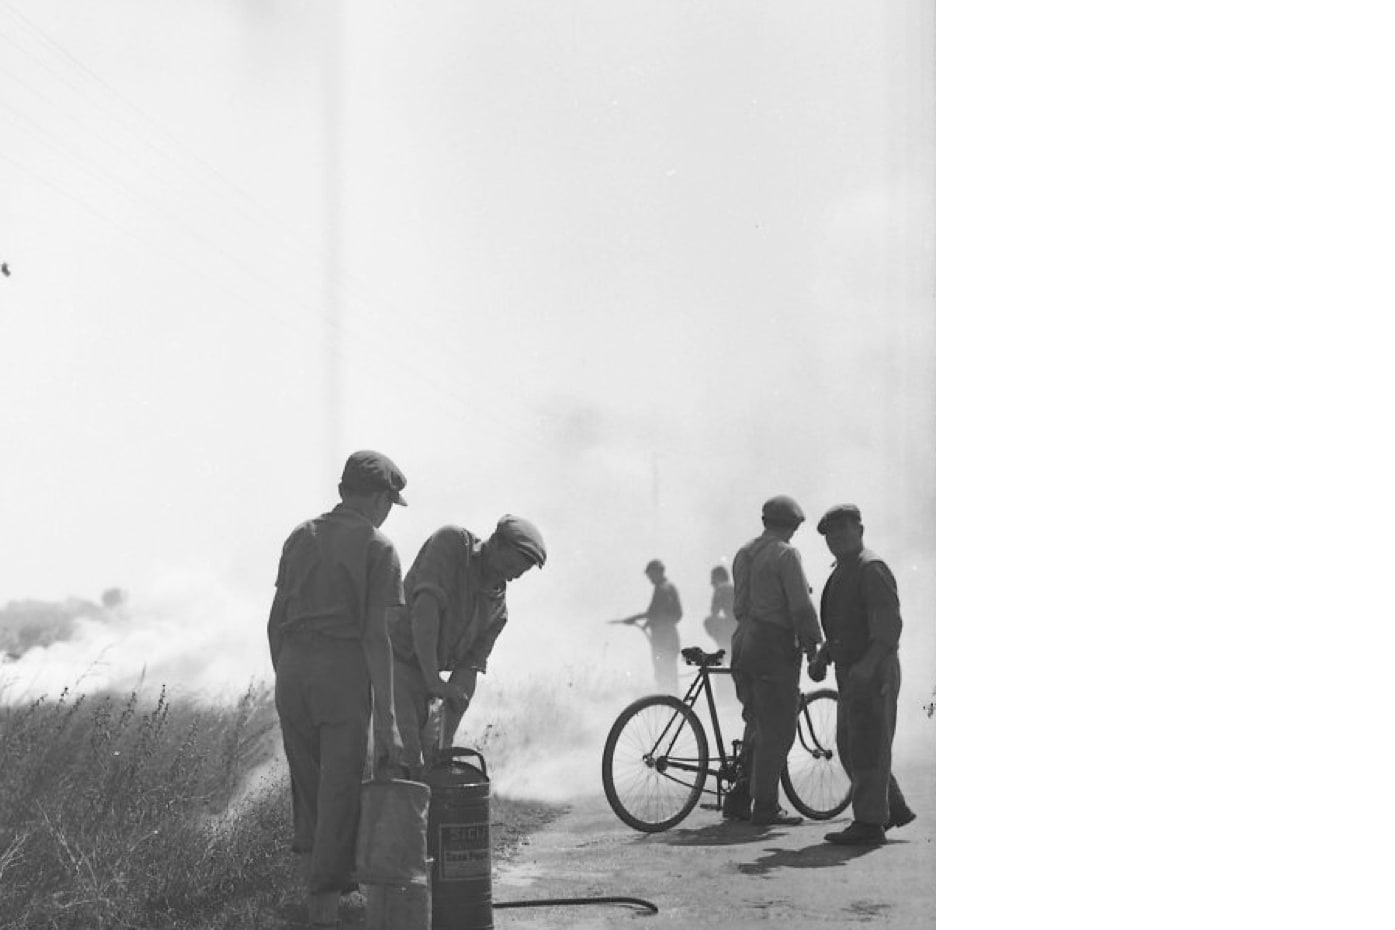 Männliche Personen mit Kappen am Rande eines Feldes, vermutlich einen Brand löschend (o. J.). Foto: Otl Aicher. © Florian Aicher Rotis, HfG-Archiv / Museum Ulm. HfG-Ar Ai F 0544.